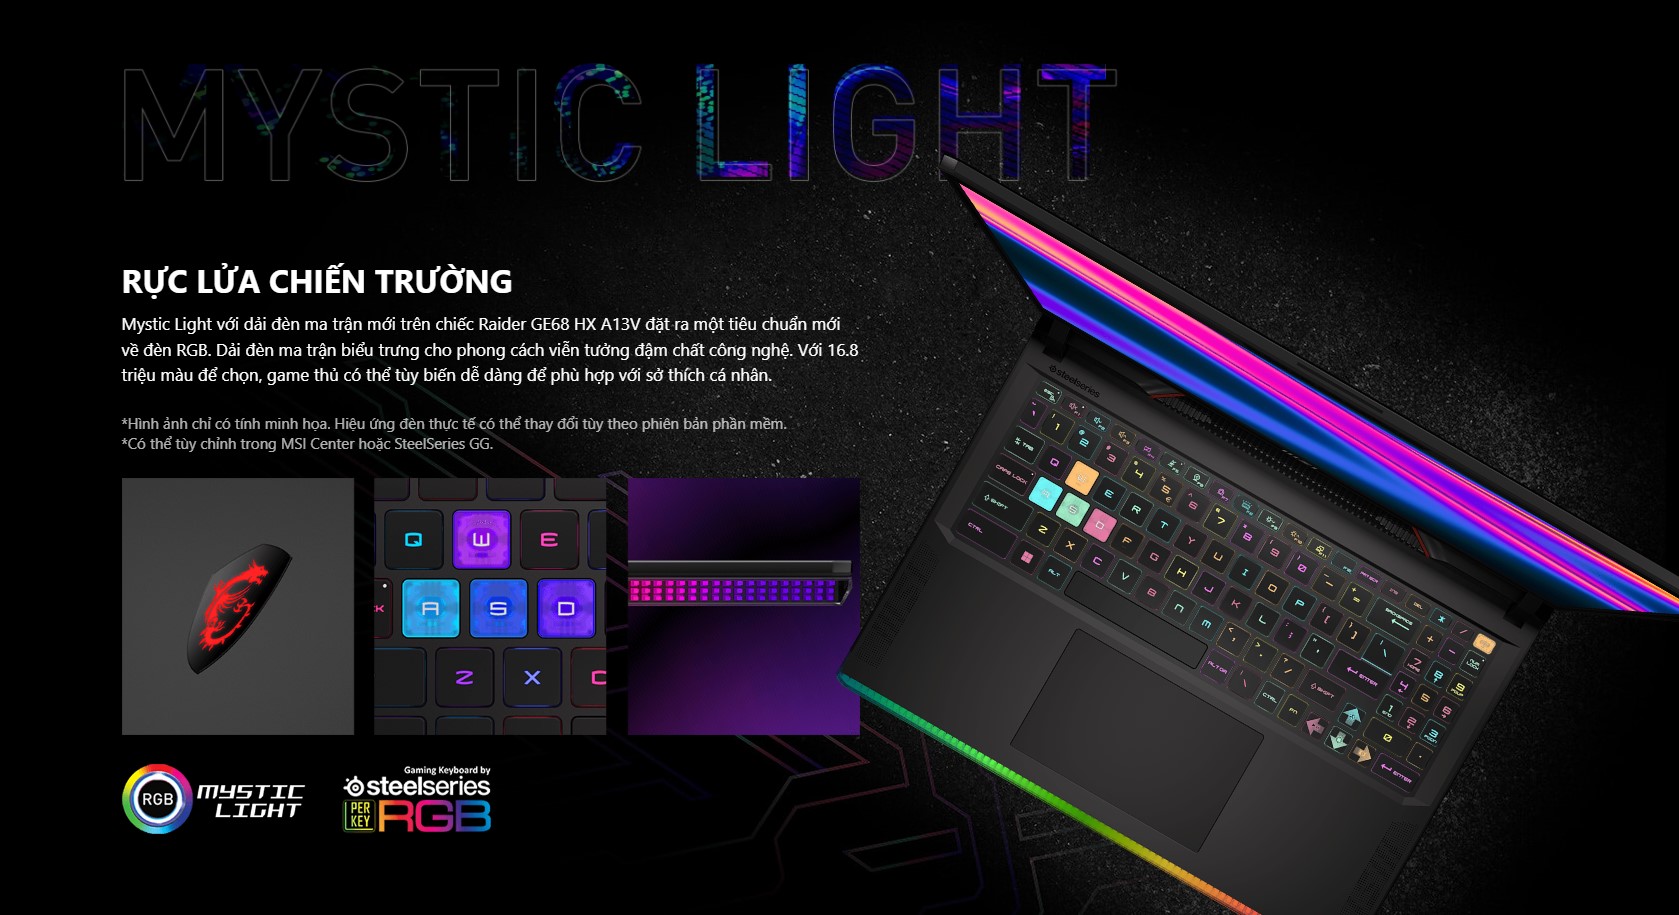 Mystic Light với dải đèn ma trận mới trên chiếc Raider GE68 HX A13V đặt ra một tiêu chuẩn mới về đèn RGB. Dải đèn ma trận biểu trưng cho phong cách viễn tưởng đậm chất công nghệ. Với 16.8 triệu màu để chọn, game thủ có thể tùy biến dễ dàng để phù hợp với sở thích cá nhân.